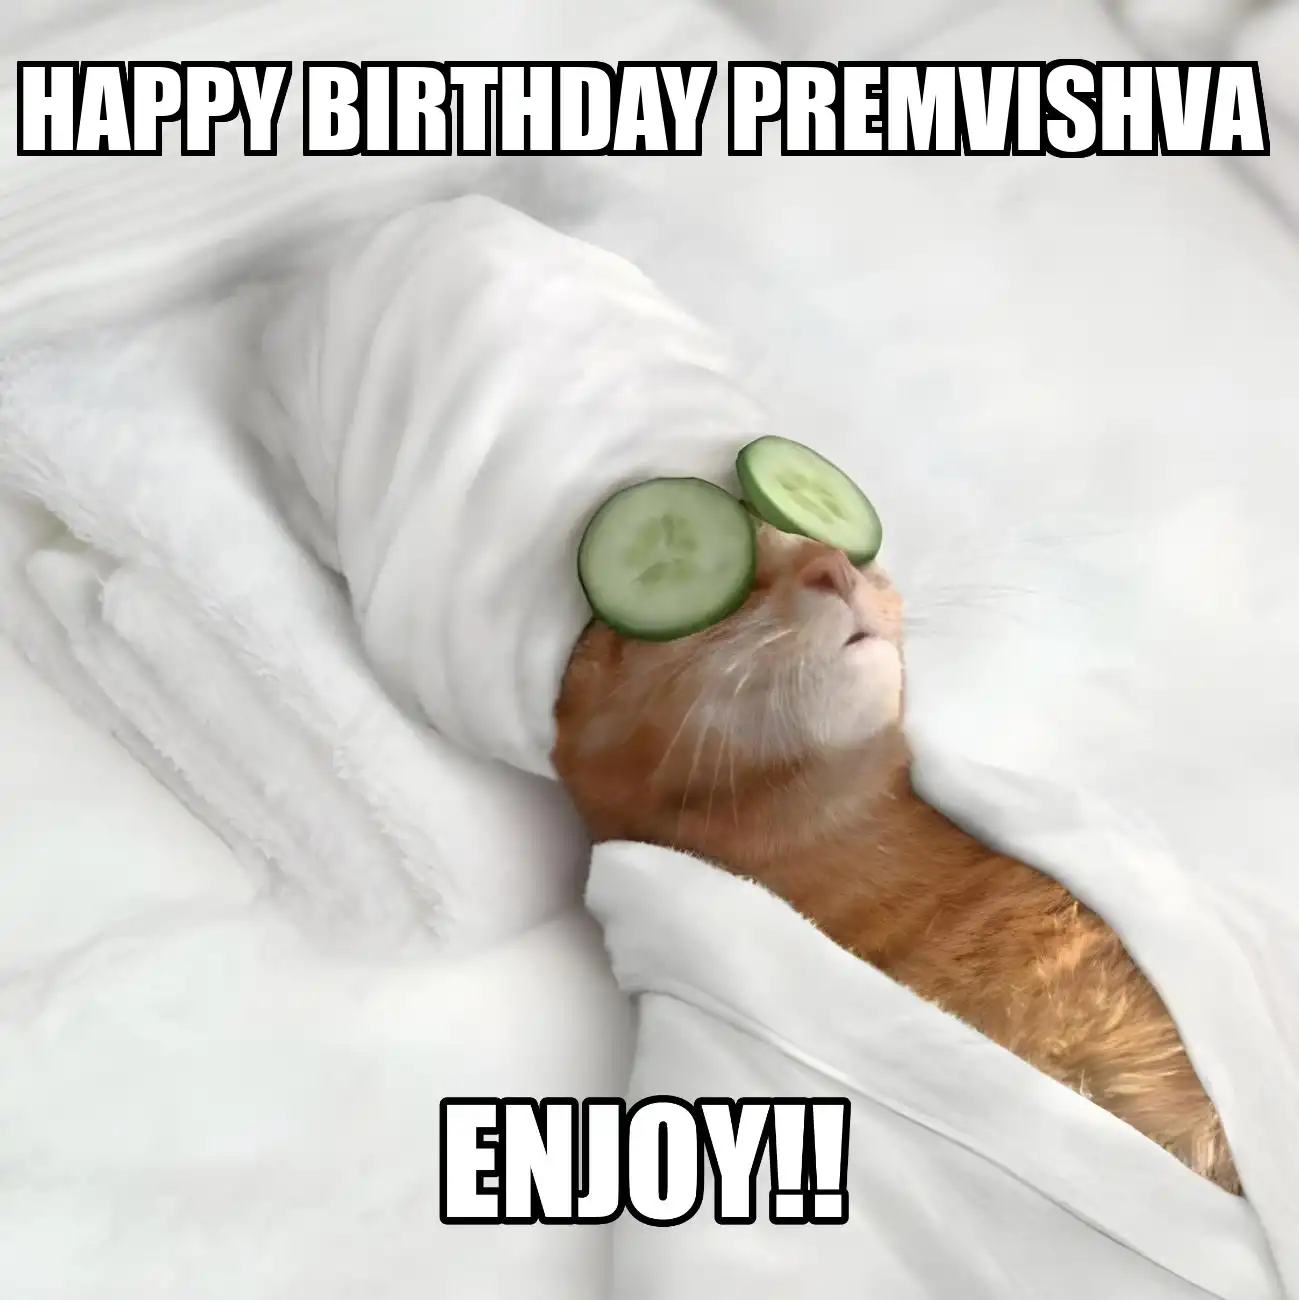 Happy Birthday Premvishva Enjoy Cat Meme